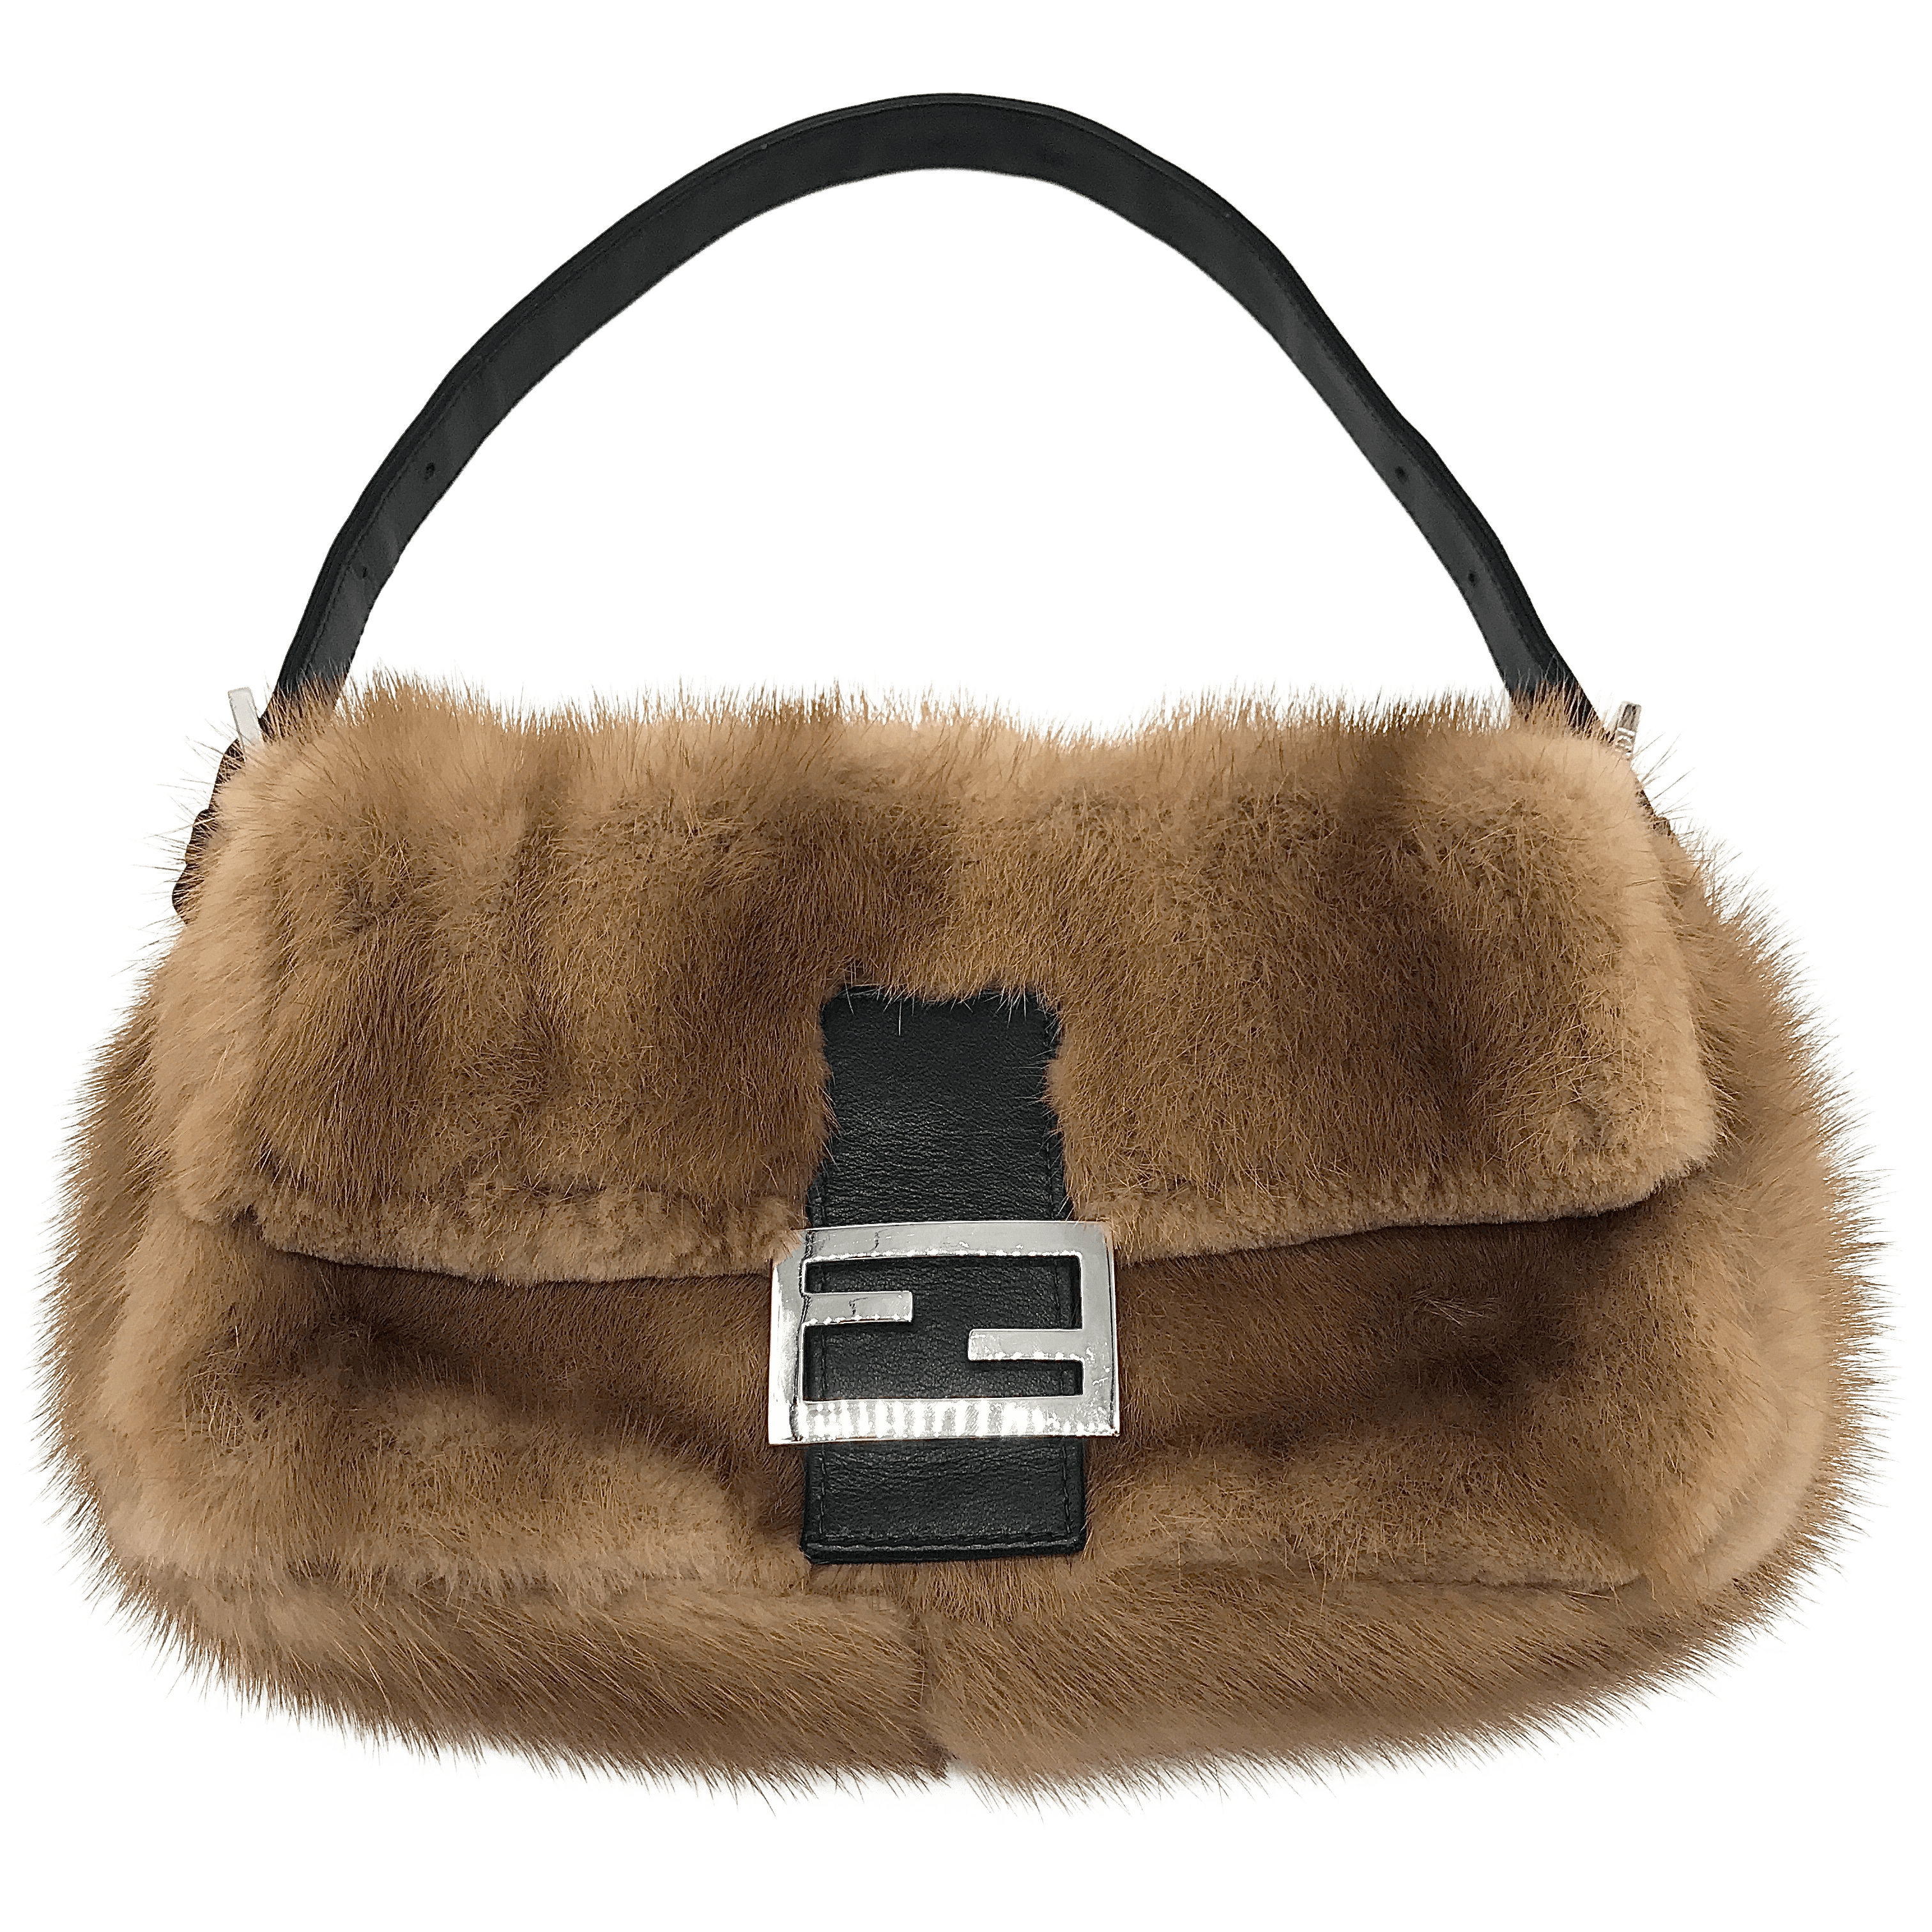 FENDI Baguette Brown Real Mink Fur Bag